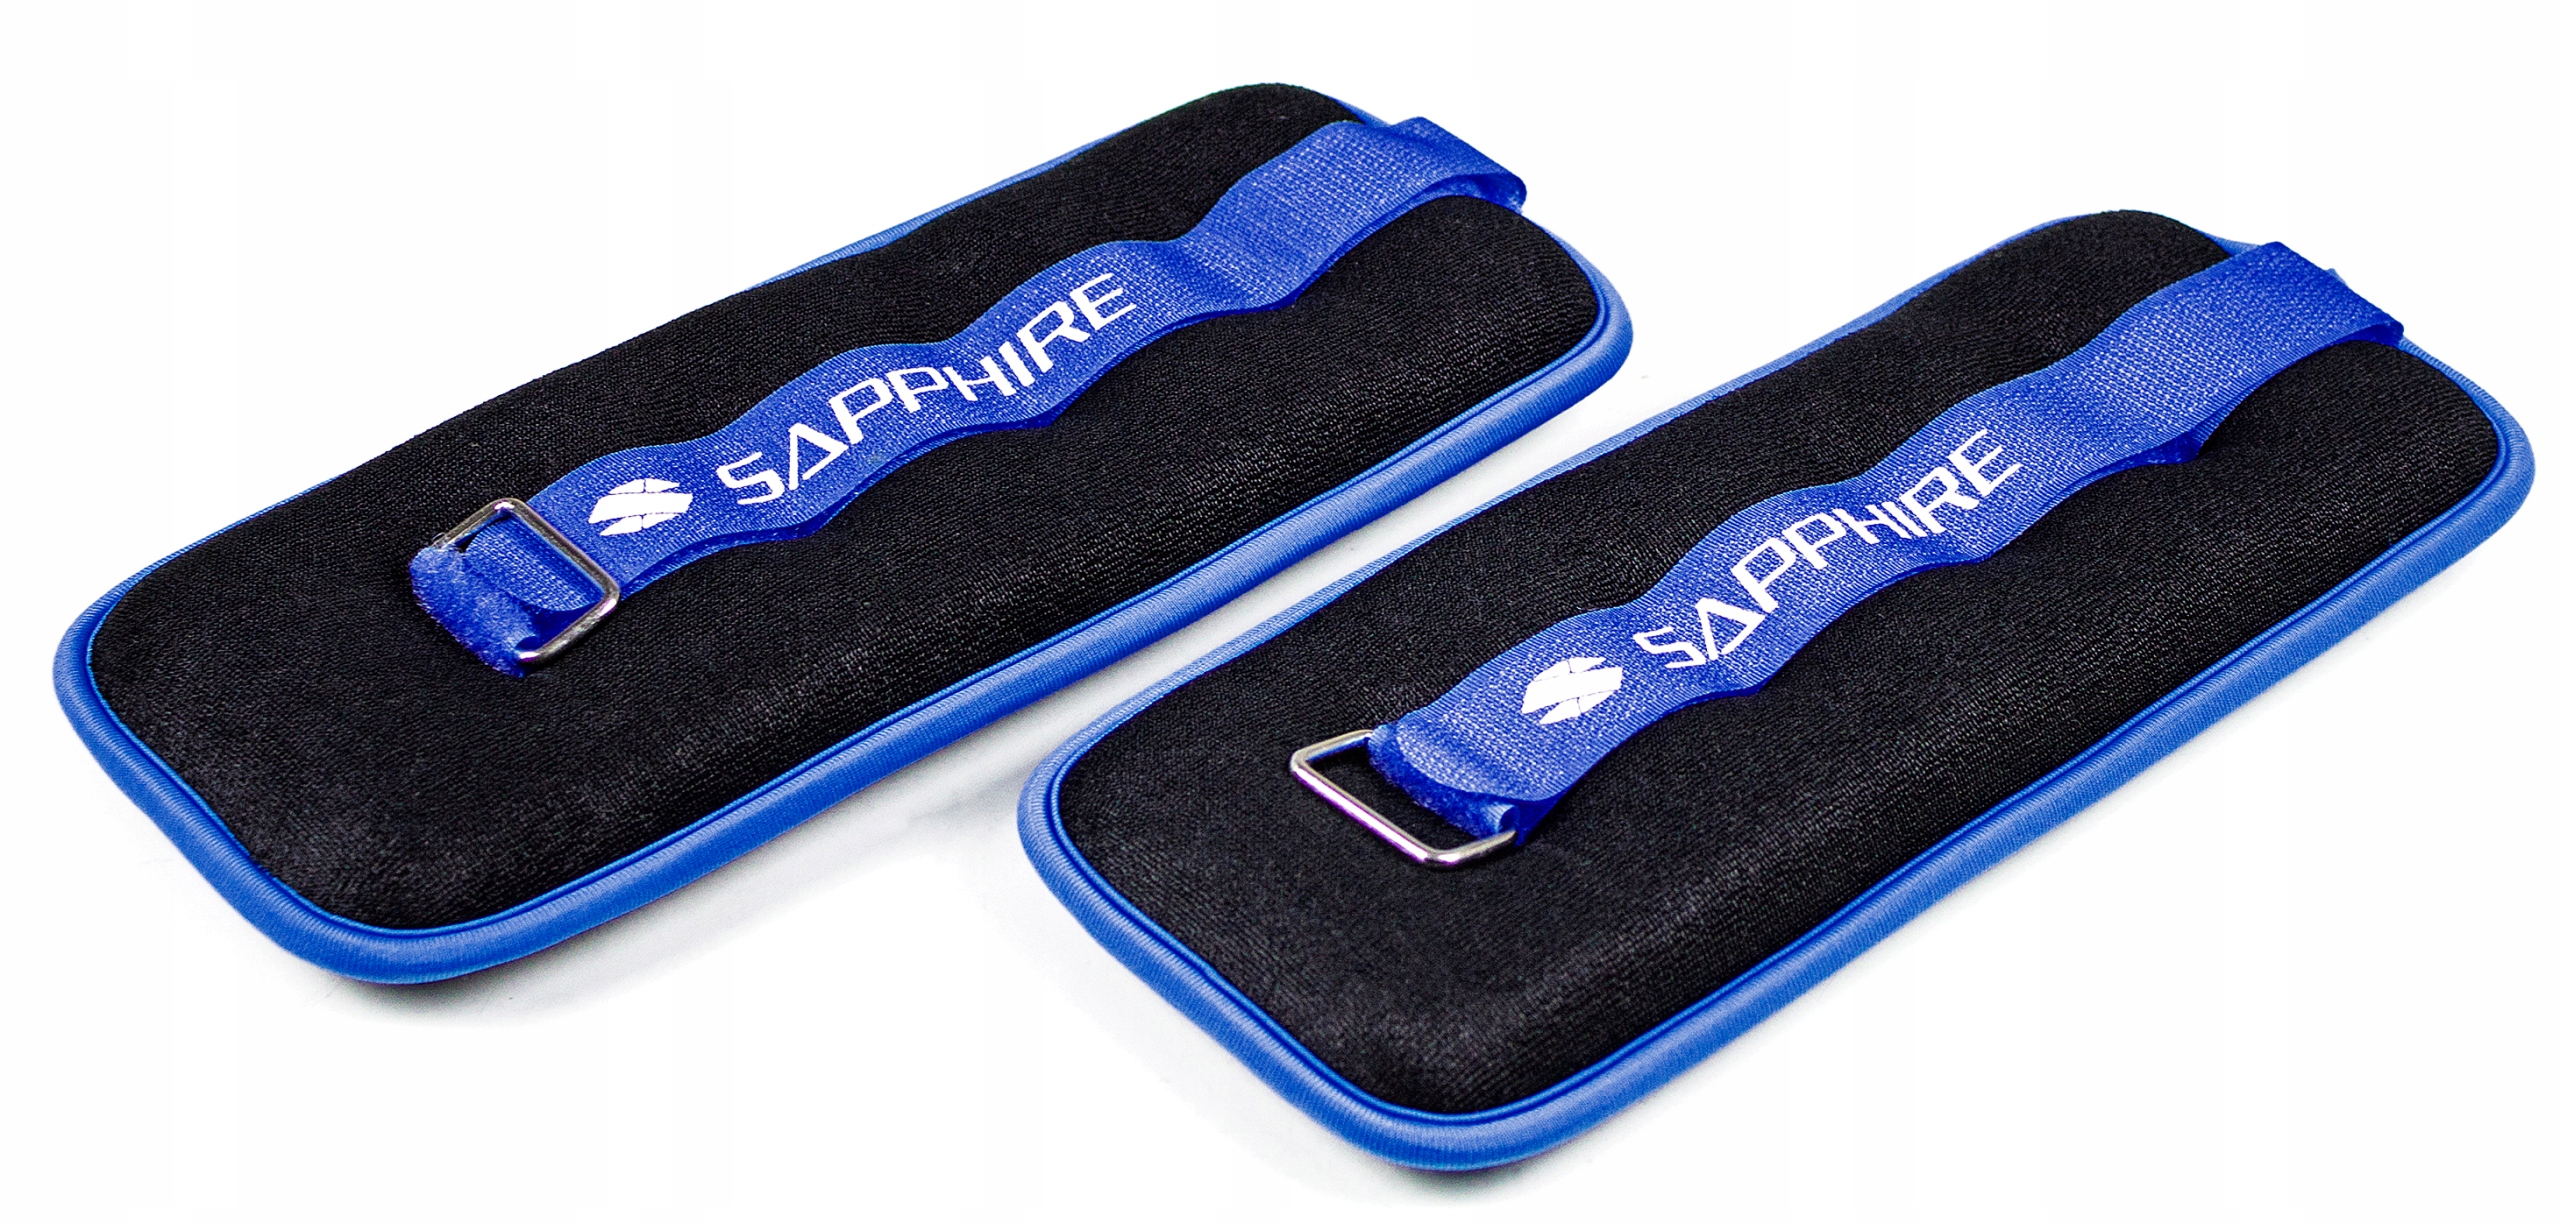 Obciążenia na rzep Sapphire 2x1 kg SG-1W